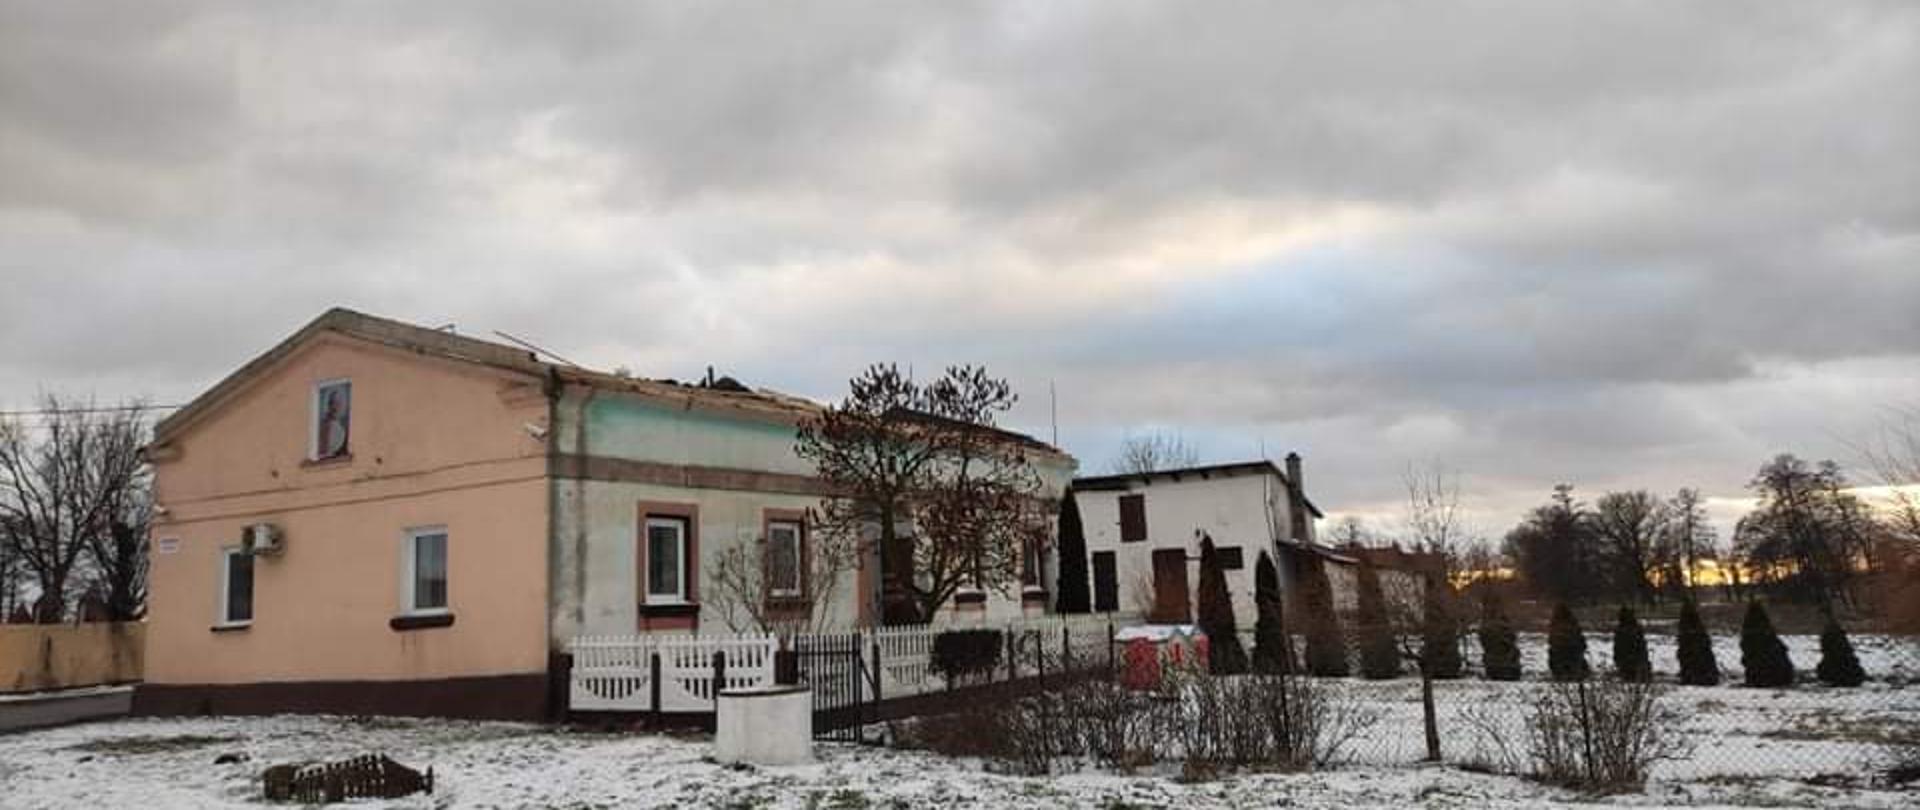 Zdjęcie przedstawia budynek z zerwanym dachem